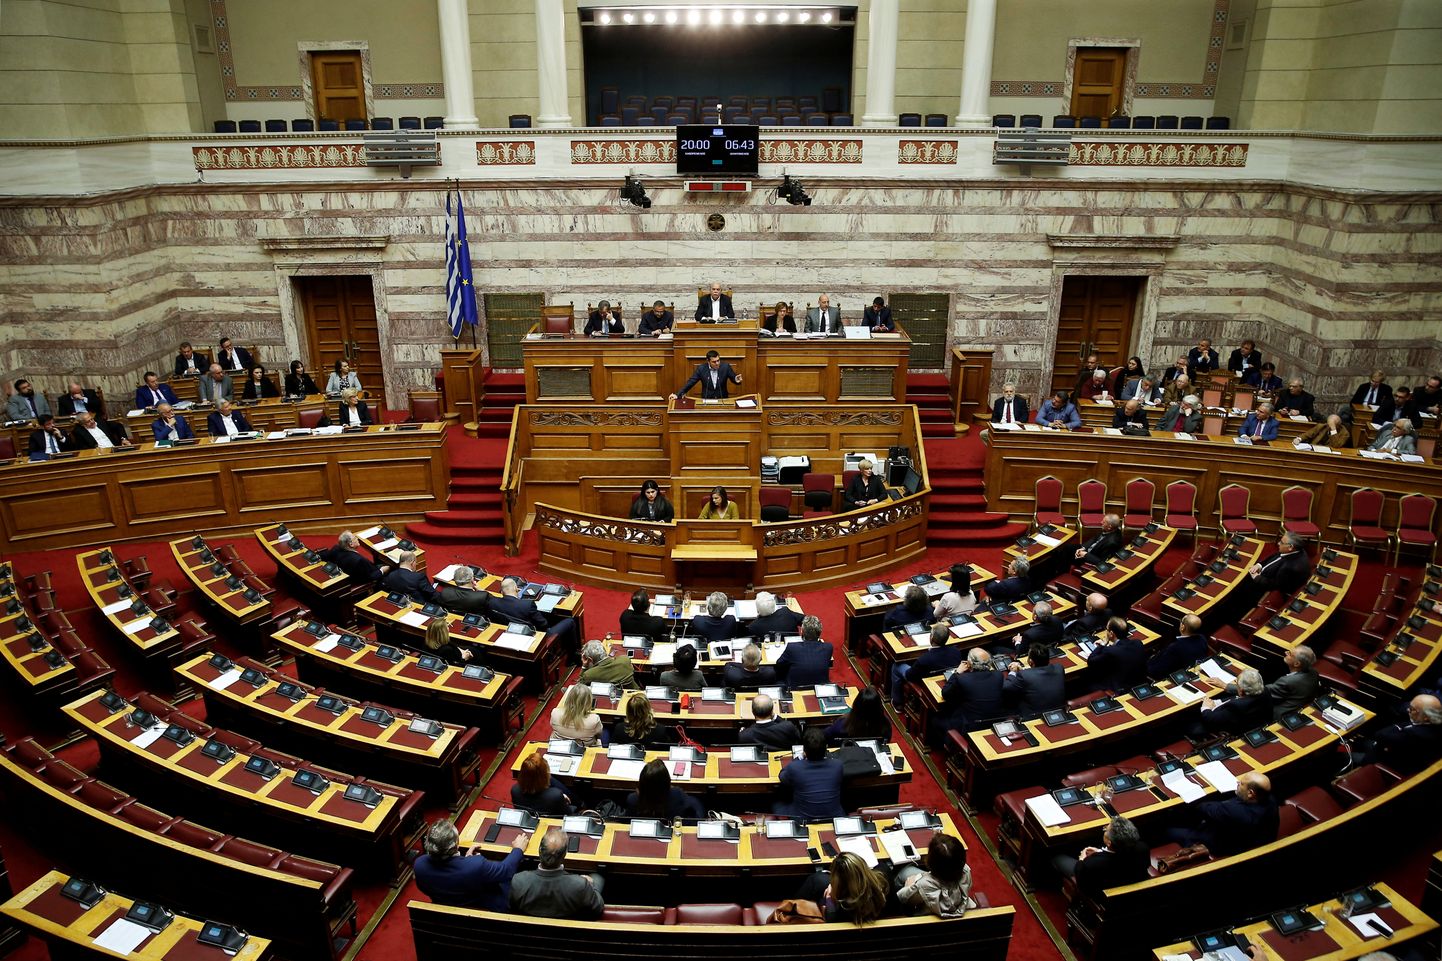 Kreeka peaminister Aléxis Tsípras 17. aprillil pidamas parlamendi ees kõnet enne hääletust Saksamaalt sõjakahjude eest reparatsioonide nõudmise üle.